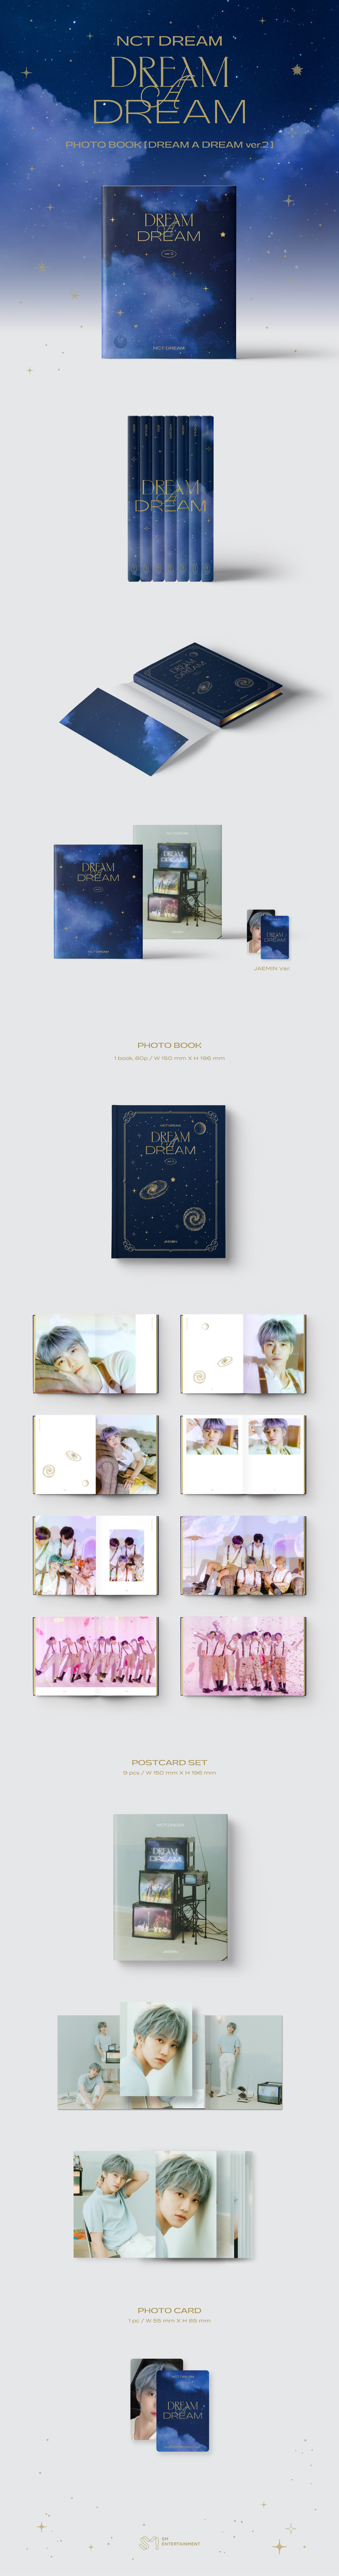 cn.ktown4u.com : [全款] [渽民] NCT DREAM PHOTO BOOK [DREAM A DREAM